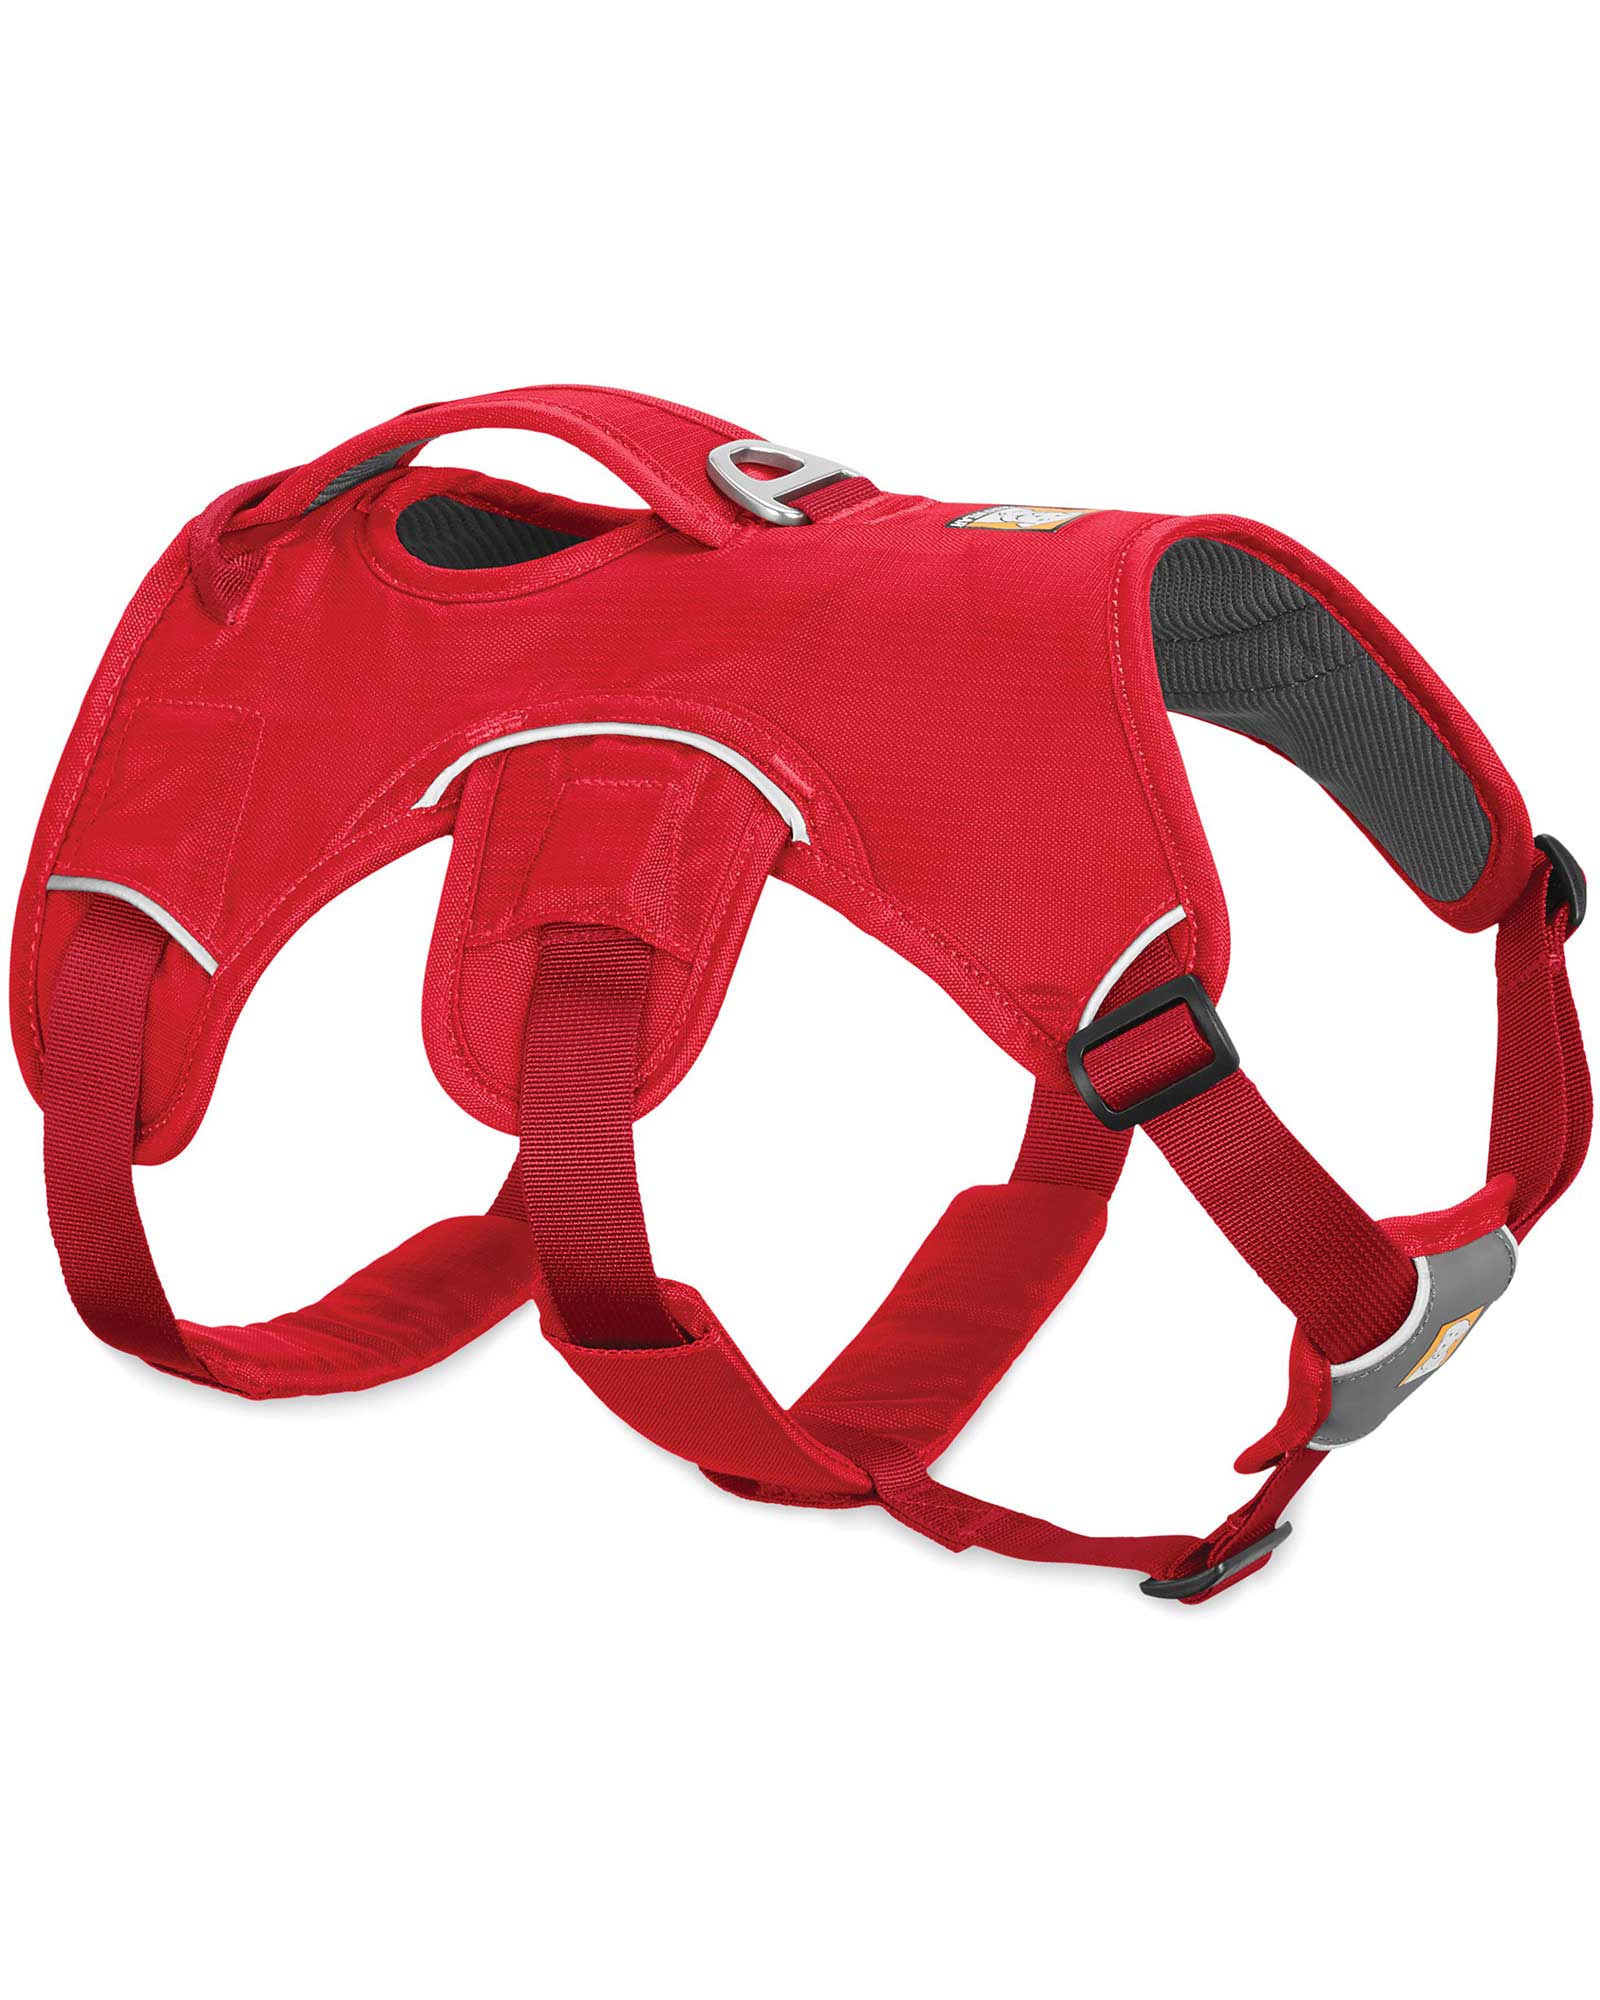 Ruffwear Web Master Harness - Red Currant L/XL